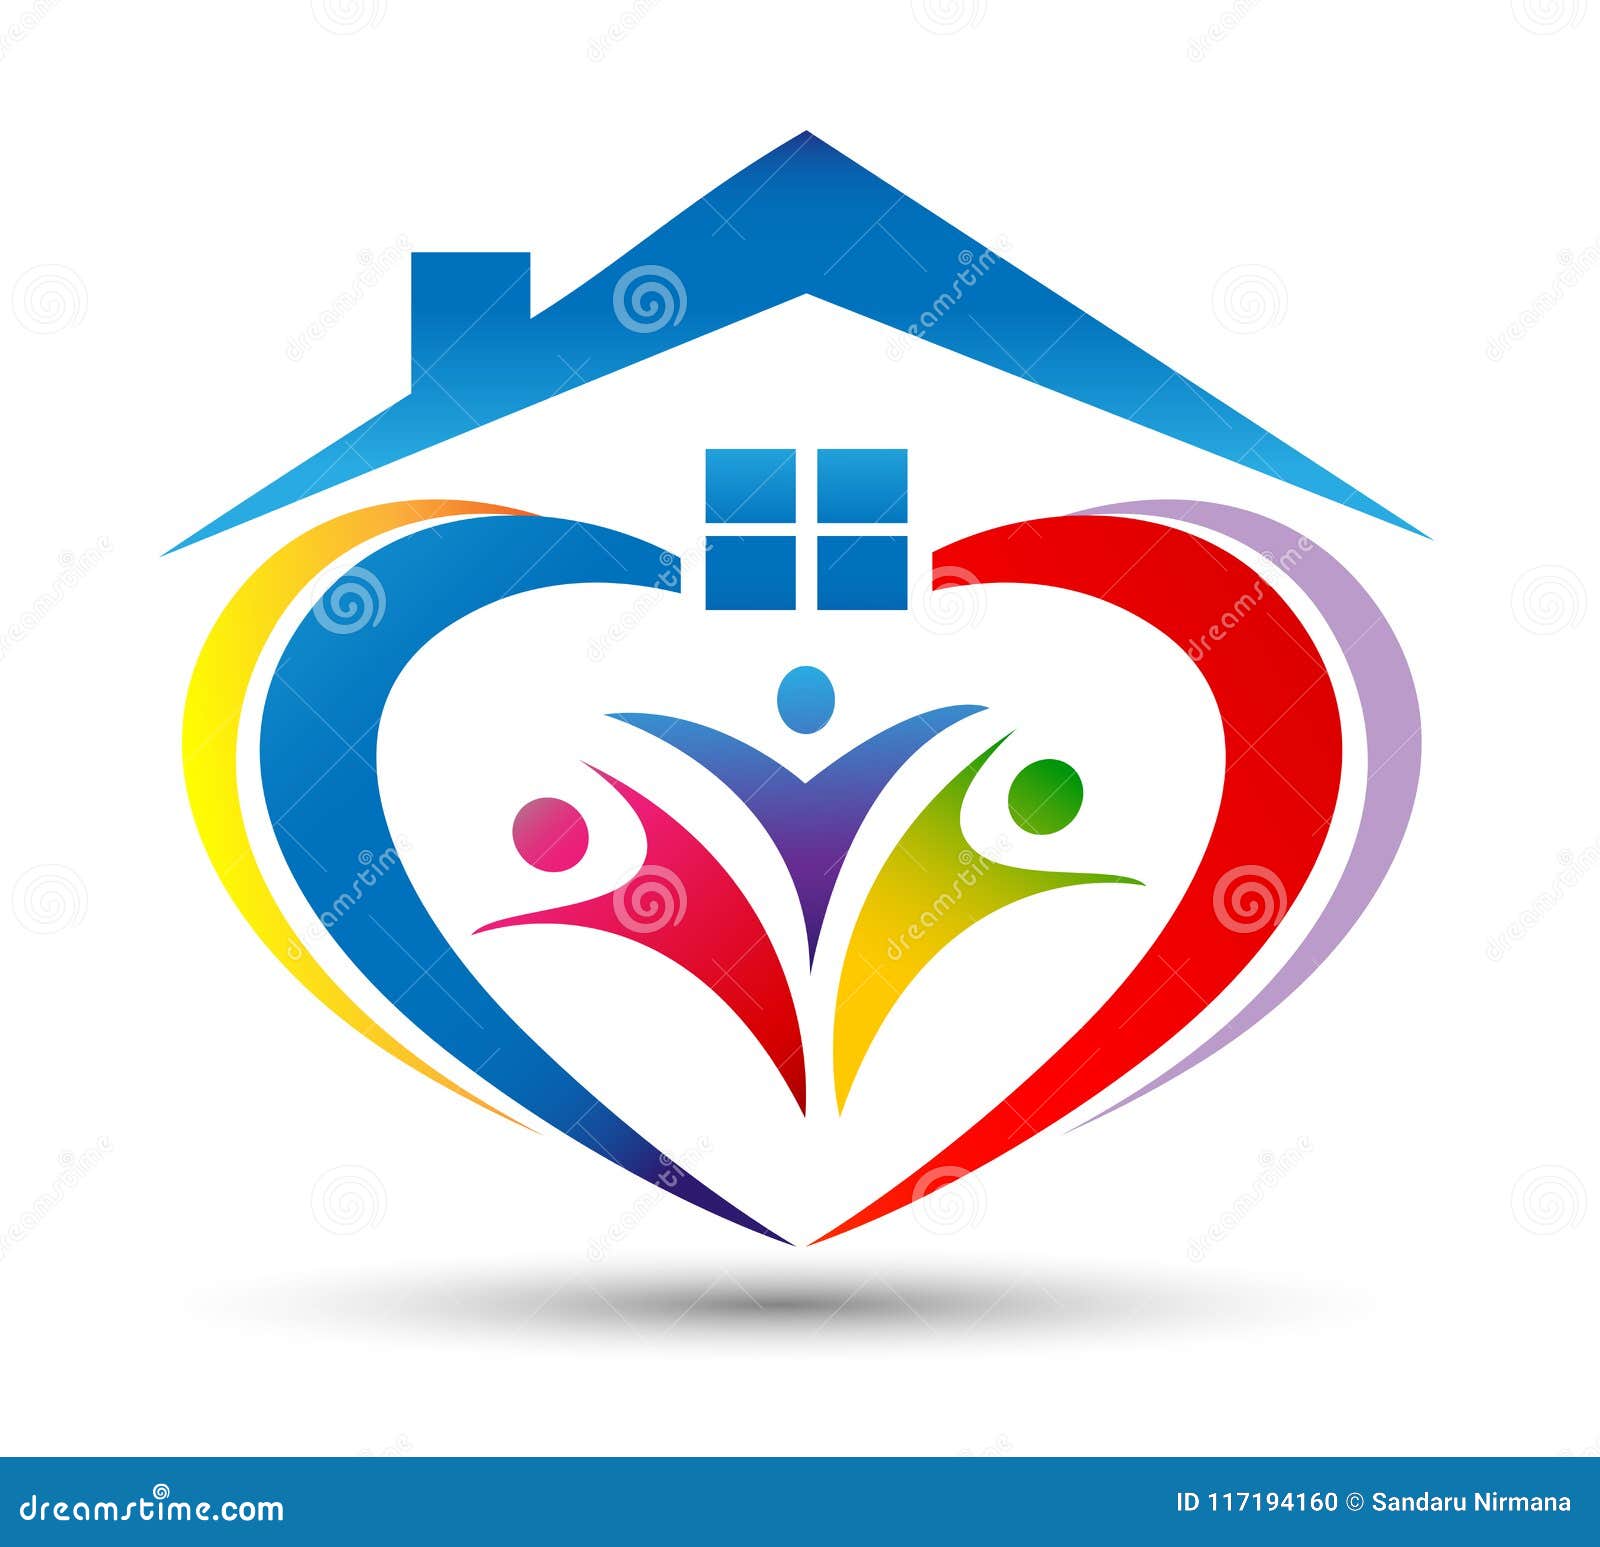 Family House Logo/Love Union Happy Heart Shaped Home House Logo Stock ...